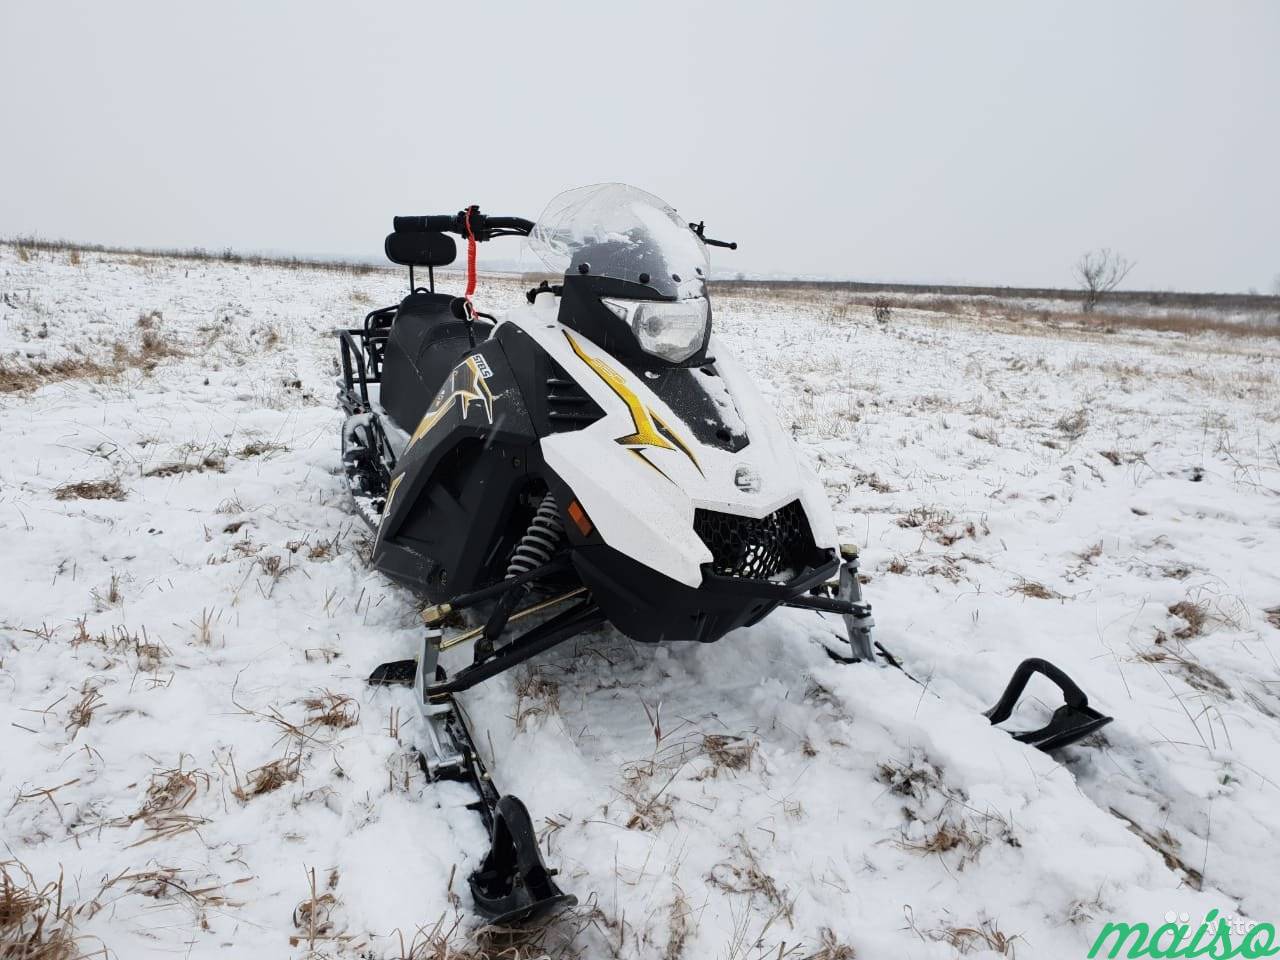 Снегоход S150 Капитан 2019 год выпуска в Санкт-Петербурге. Фото 4